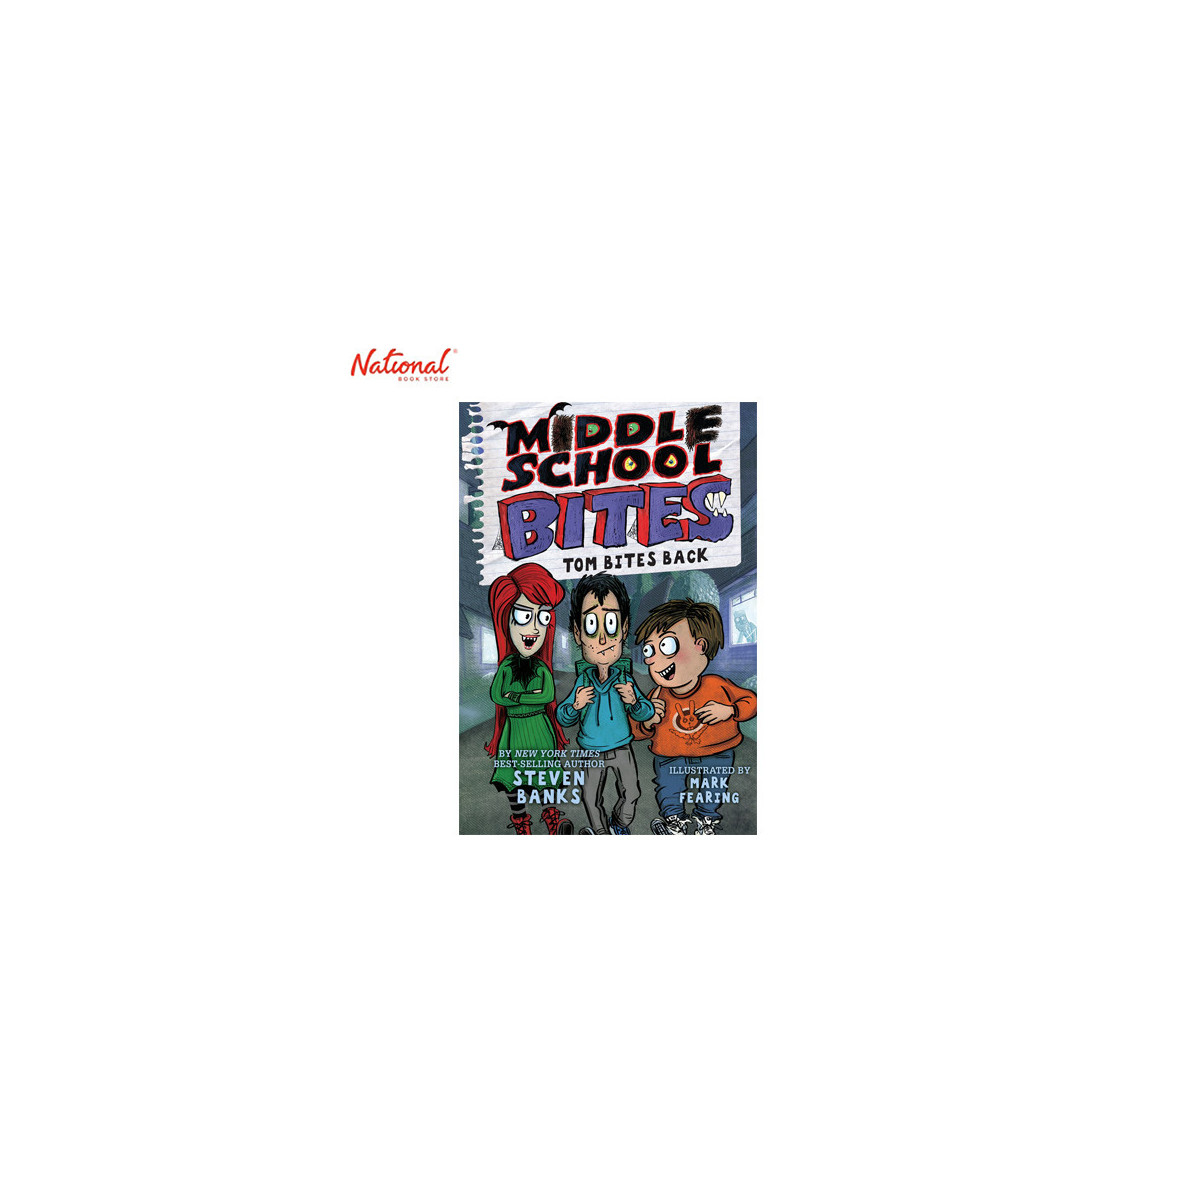 Middle School Bites: Tom Bites Back Hardcover by Steven Banks